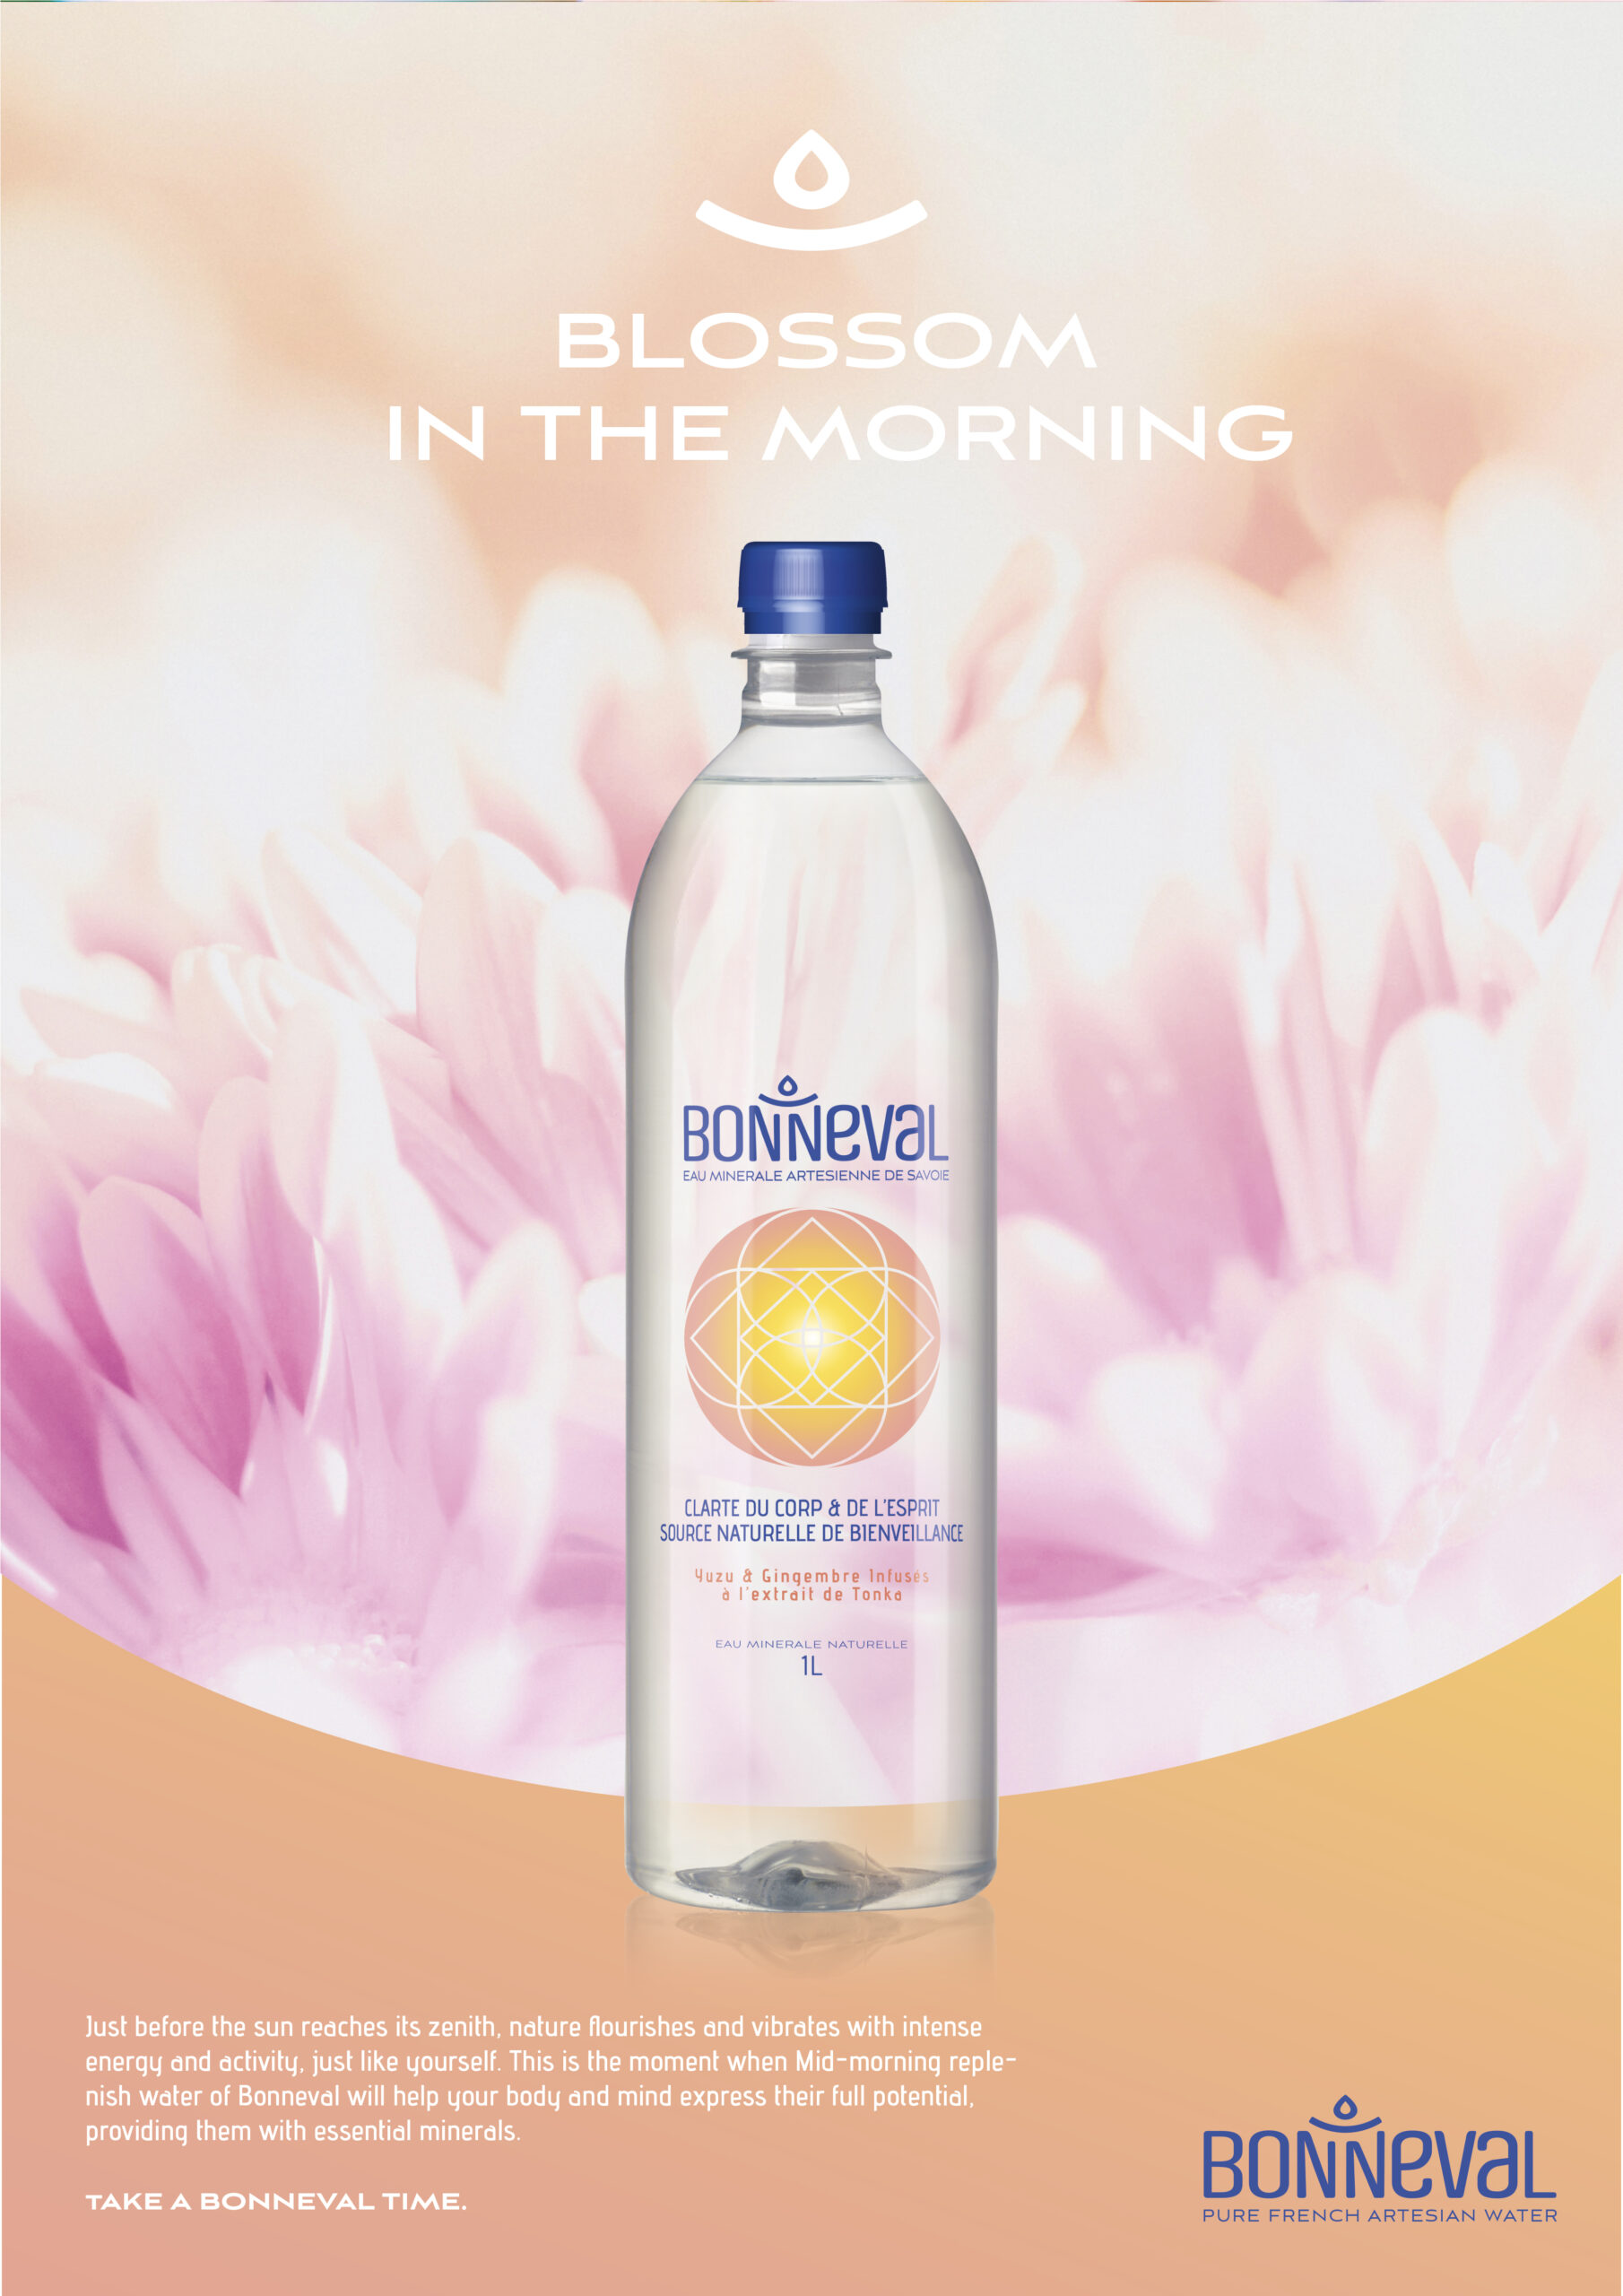 Annonce-presse pour la marque d'eau minérale Bonneval. Visuel d'une bouteille d'eau sur fond de fleurs.